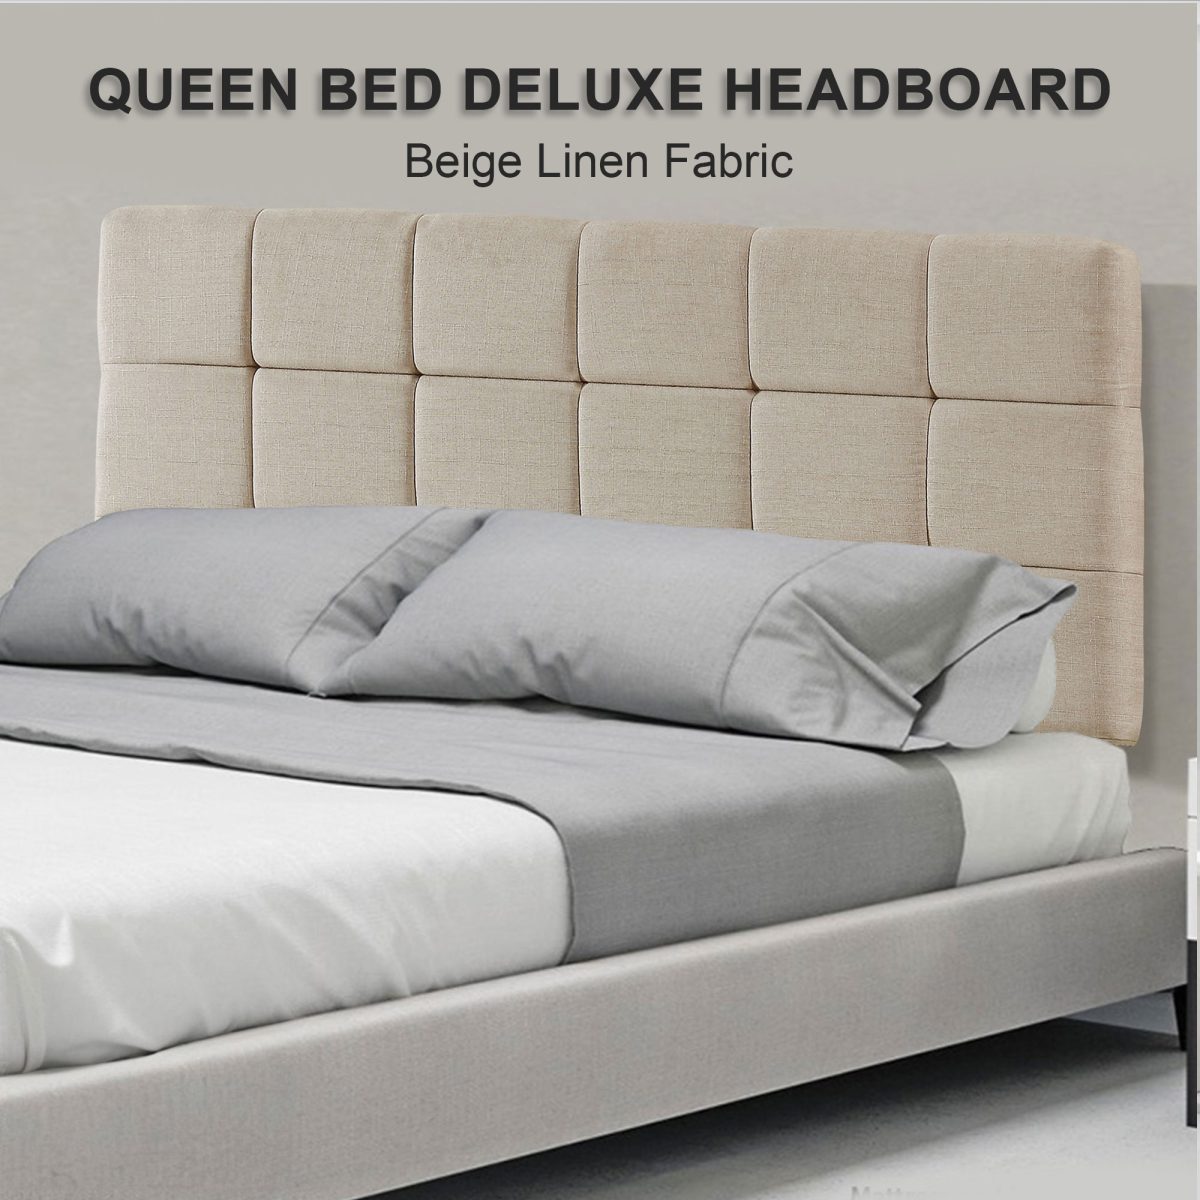 Linen Fabric Bed Deluxe Headboard Bedhead – QUEEN, Beige